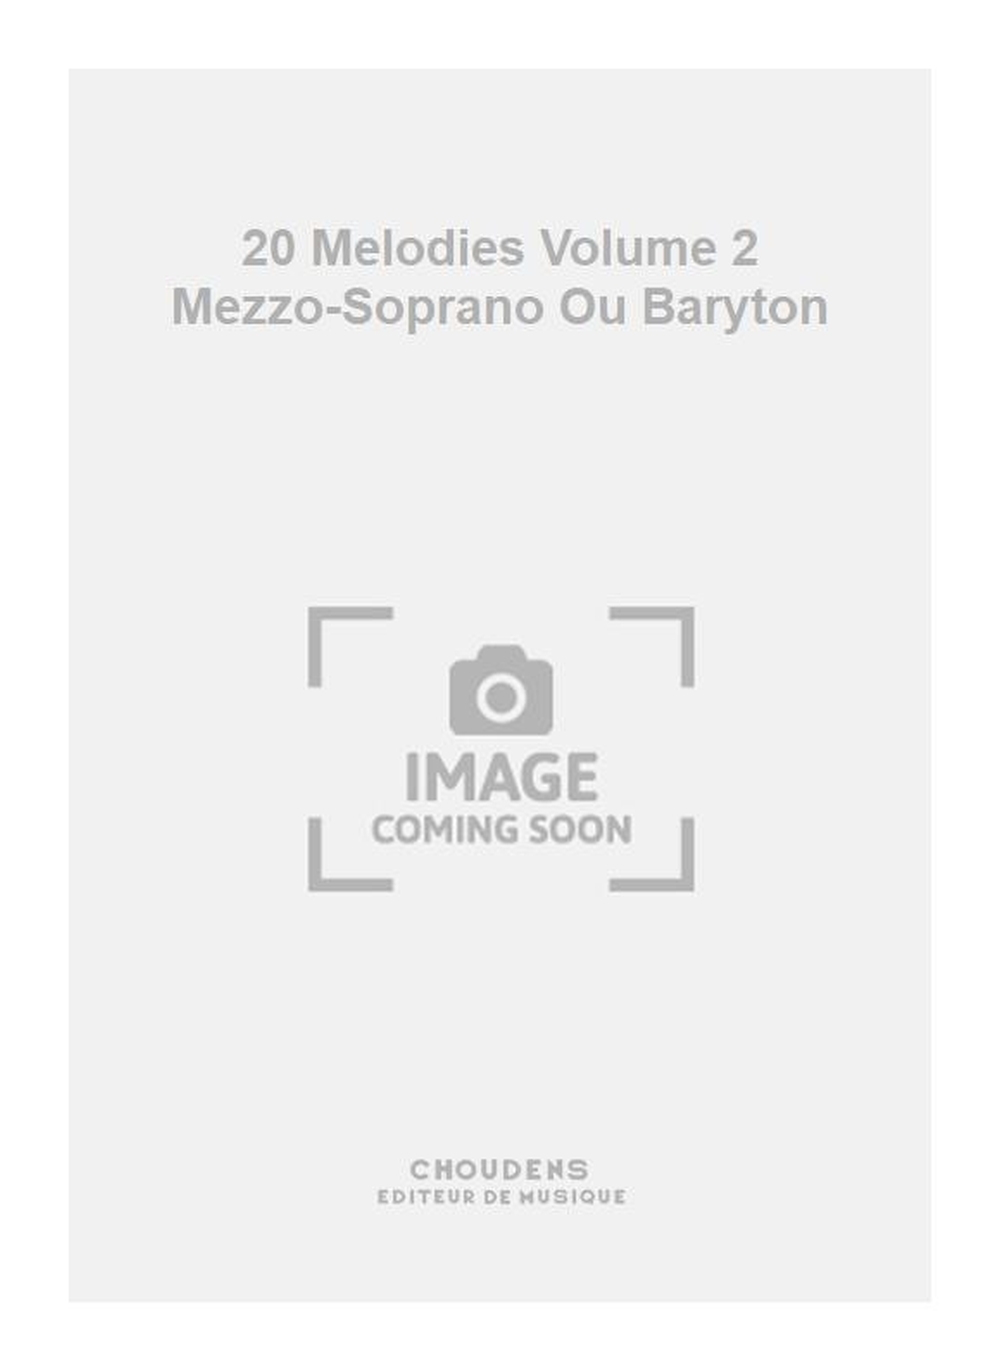 Charles Gounod: 20 Melodies Volume 2 Mezzo-Soprano Ou Baryton